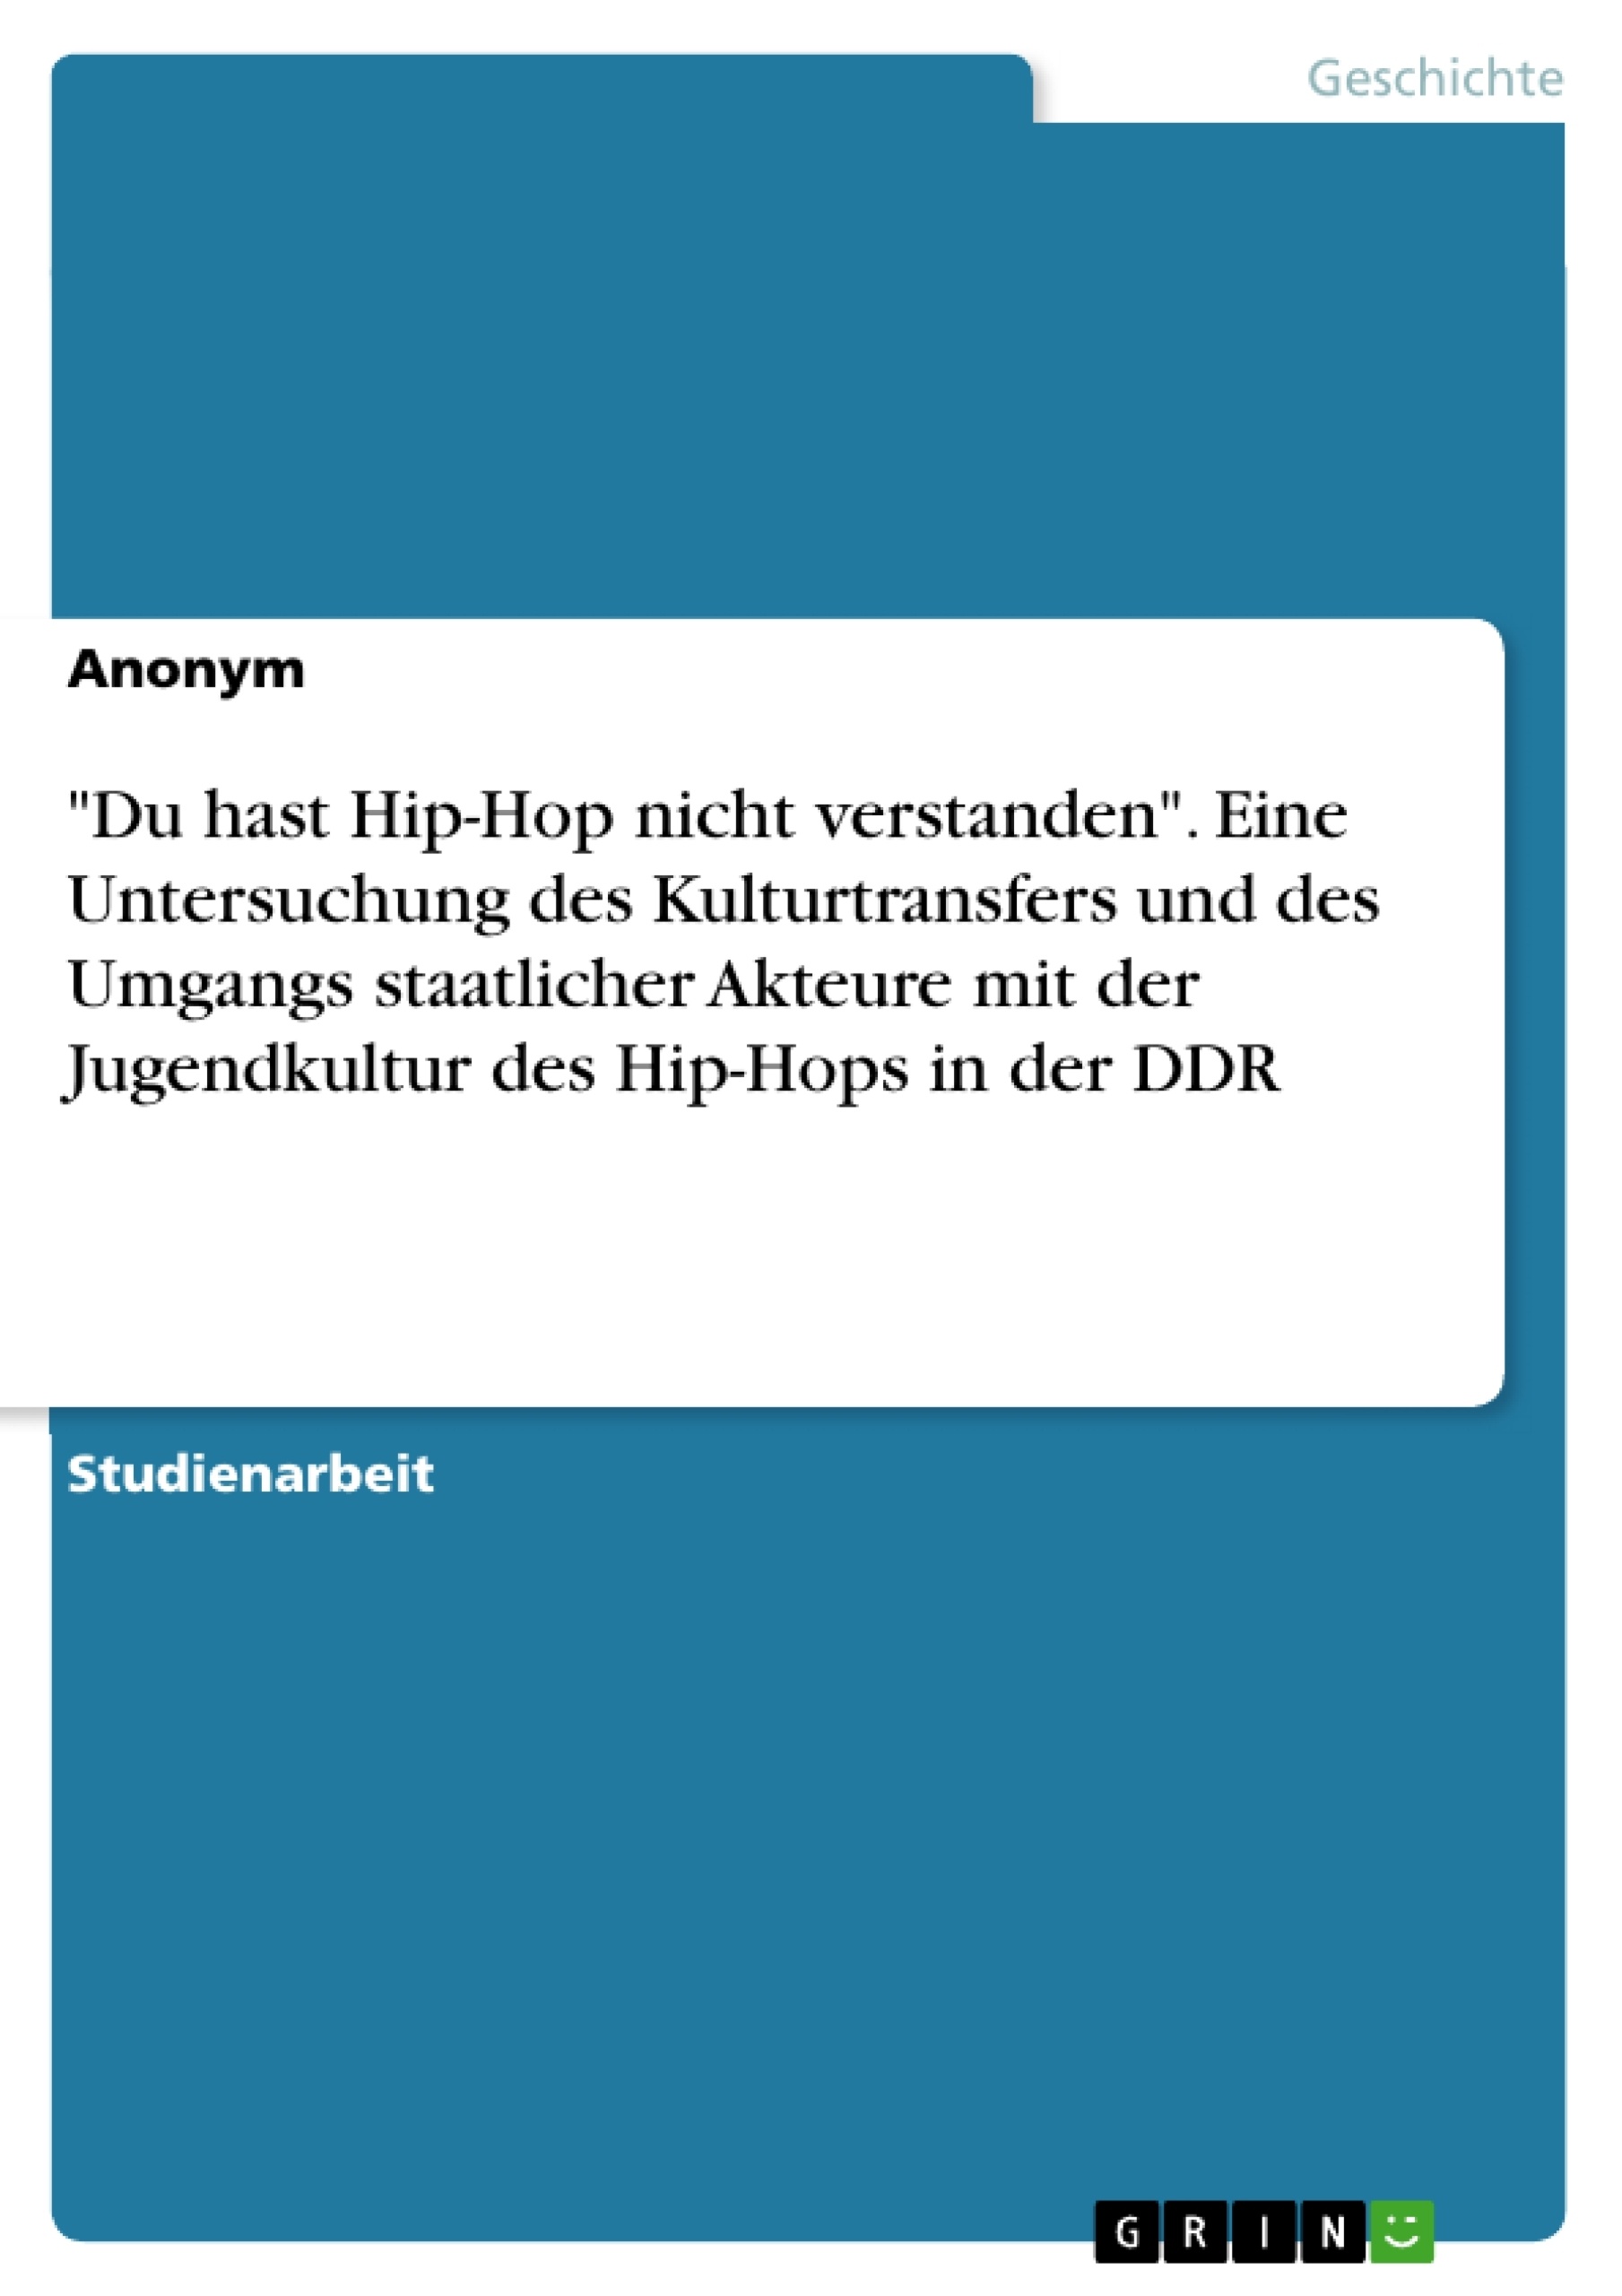 Titel: "Du hast Hip-Hop nicht verstanden". Eine Untersuchung des Kulturtransfers und des Umgangs staatlicher Akteure mit der Jugendkultur des Hip-Hops in der DDR